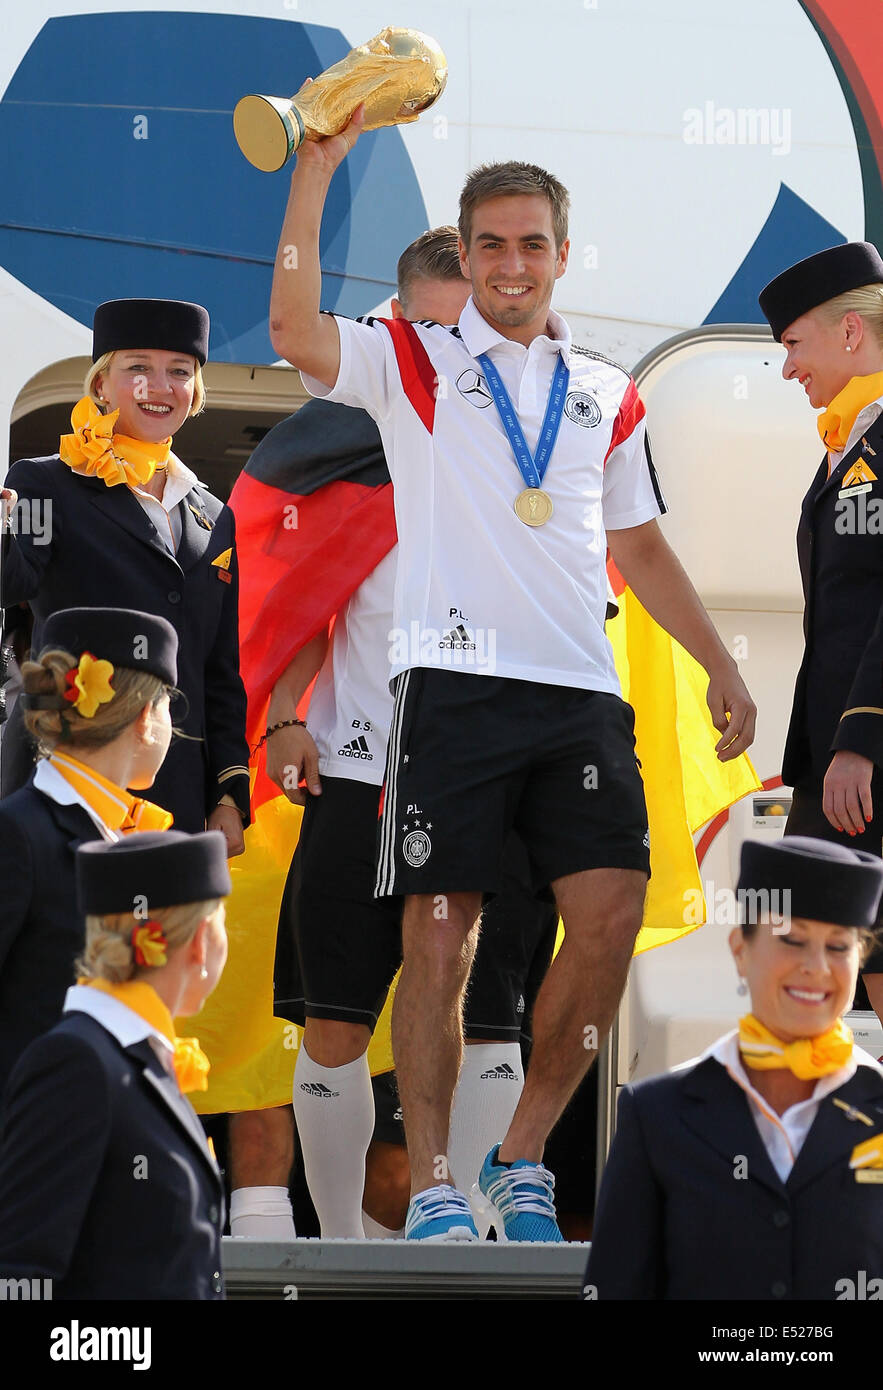 Welcome-Party der deutschen Nationalmannschaft, der neue Fußball-Weltmeister am Flughafen Tegel in Berlin, Kapitän Phillip Lahm mit dem Cup. Stockfoto